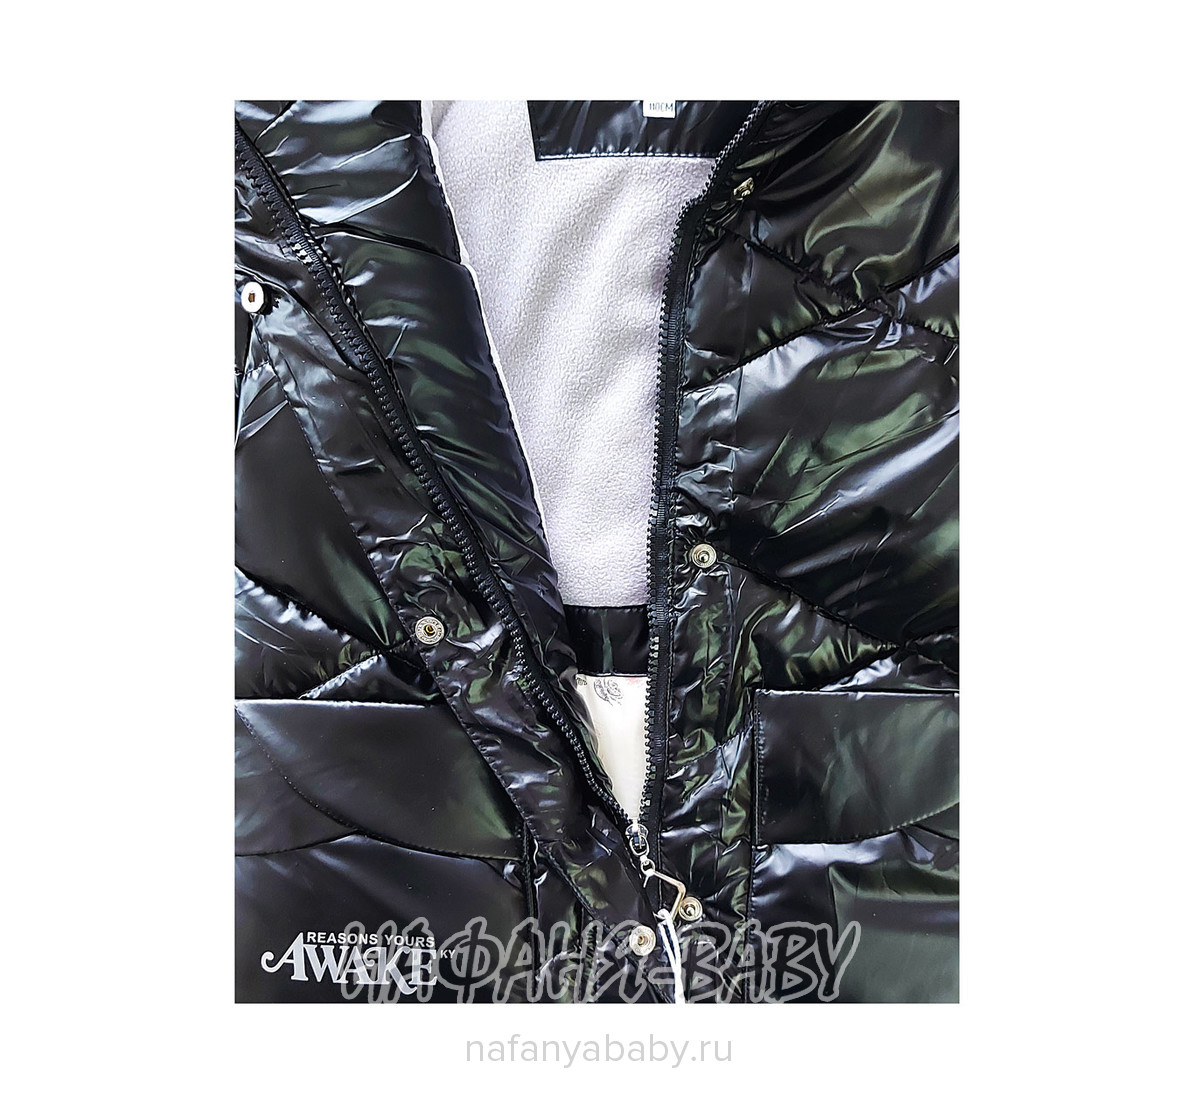 Зимняя удлиненная куртка  YOI LI арт: 227, 1-4 года, 5-9 лет, цвет черный, оптом Китай (Пекин)